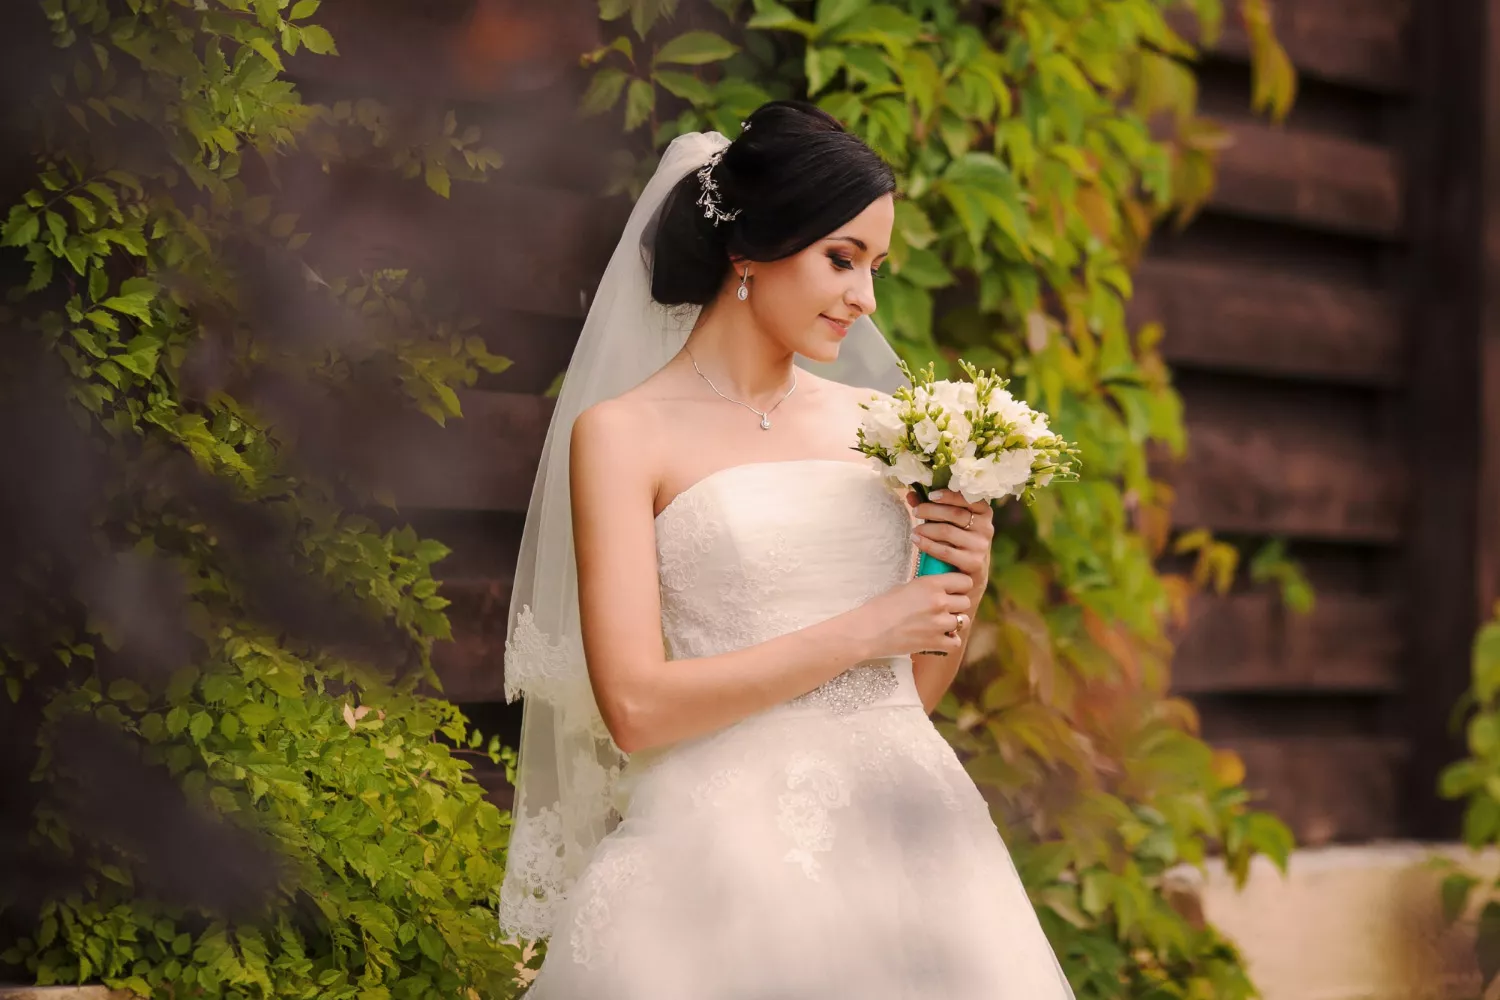 平口婚紗樣式簡潔俐落，能突顯新娘的頸部、肩頸線條。